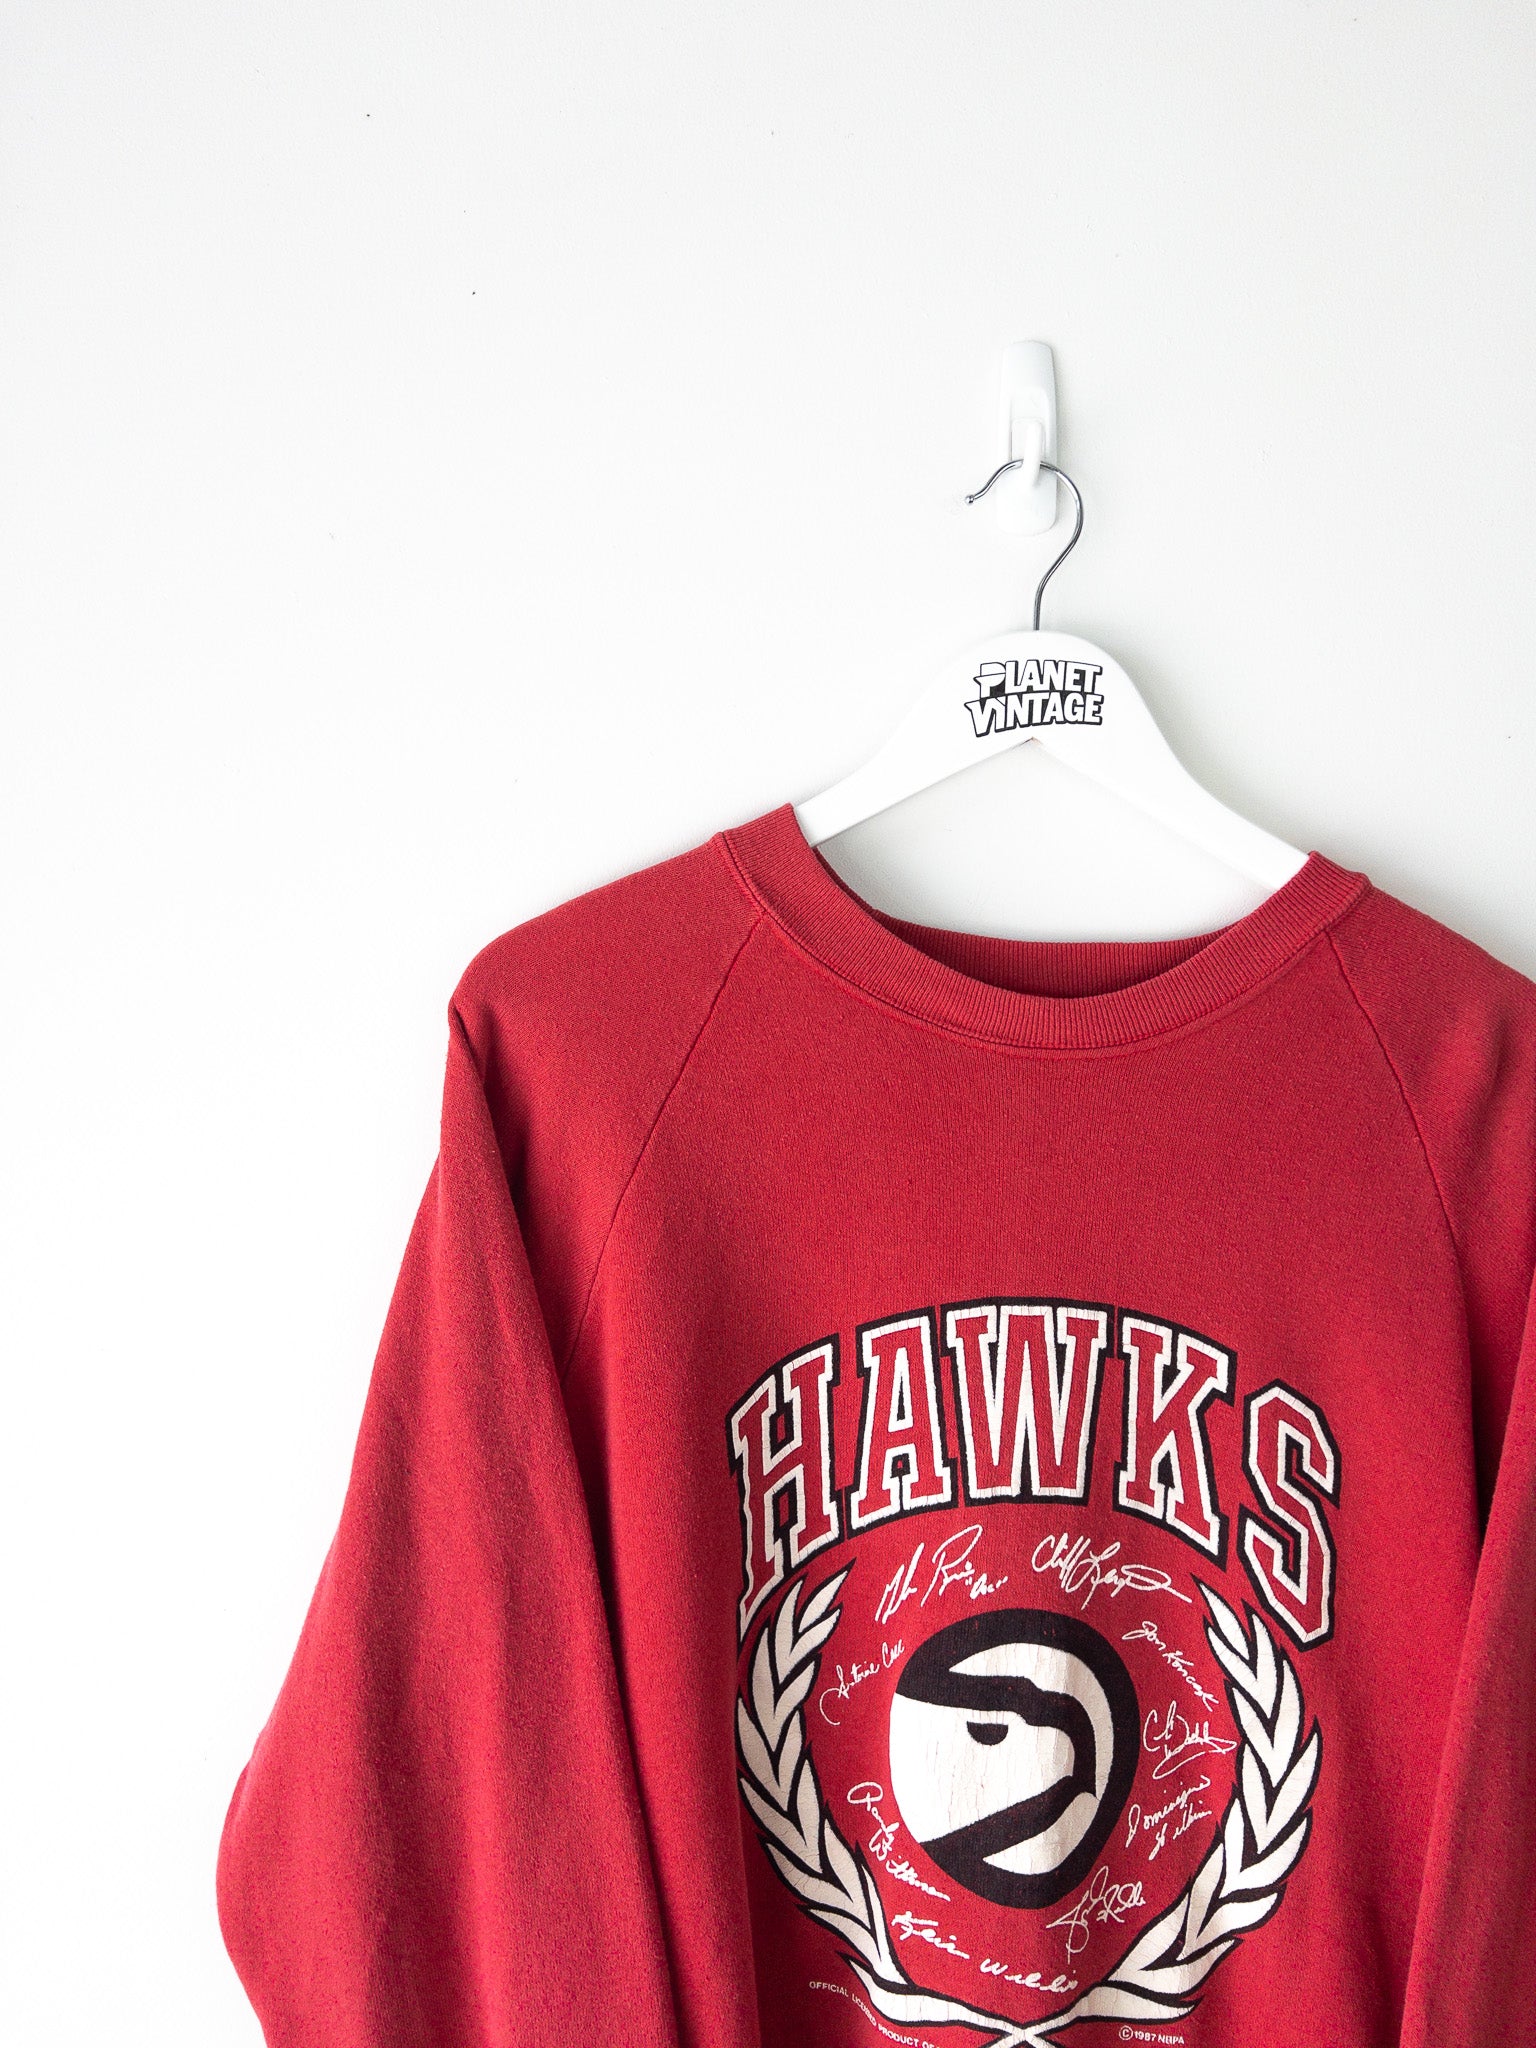 Vintage Atlanta Hawks 1987 Sweatshirt (L)